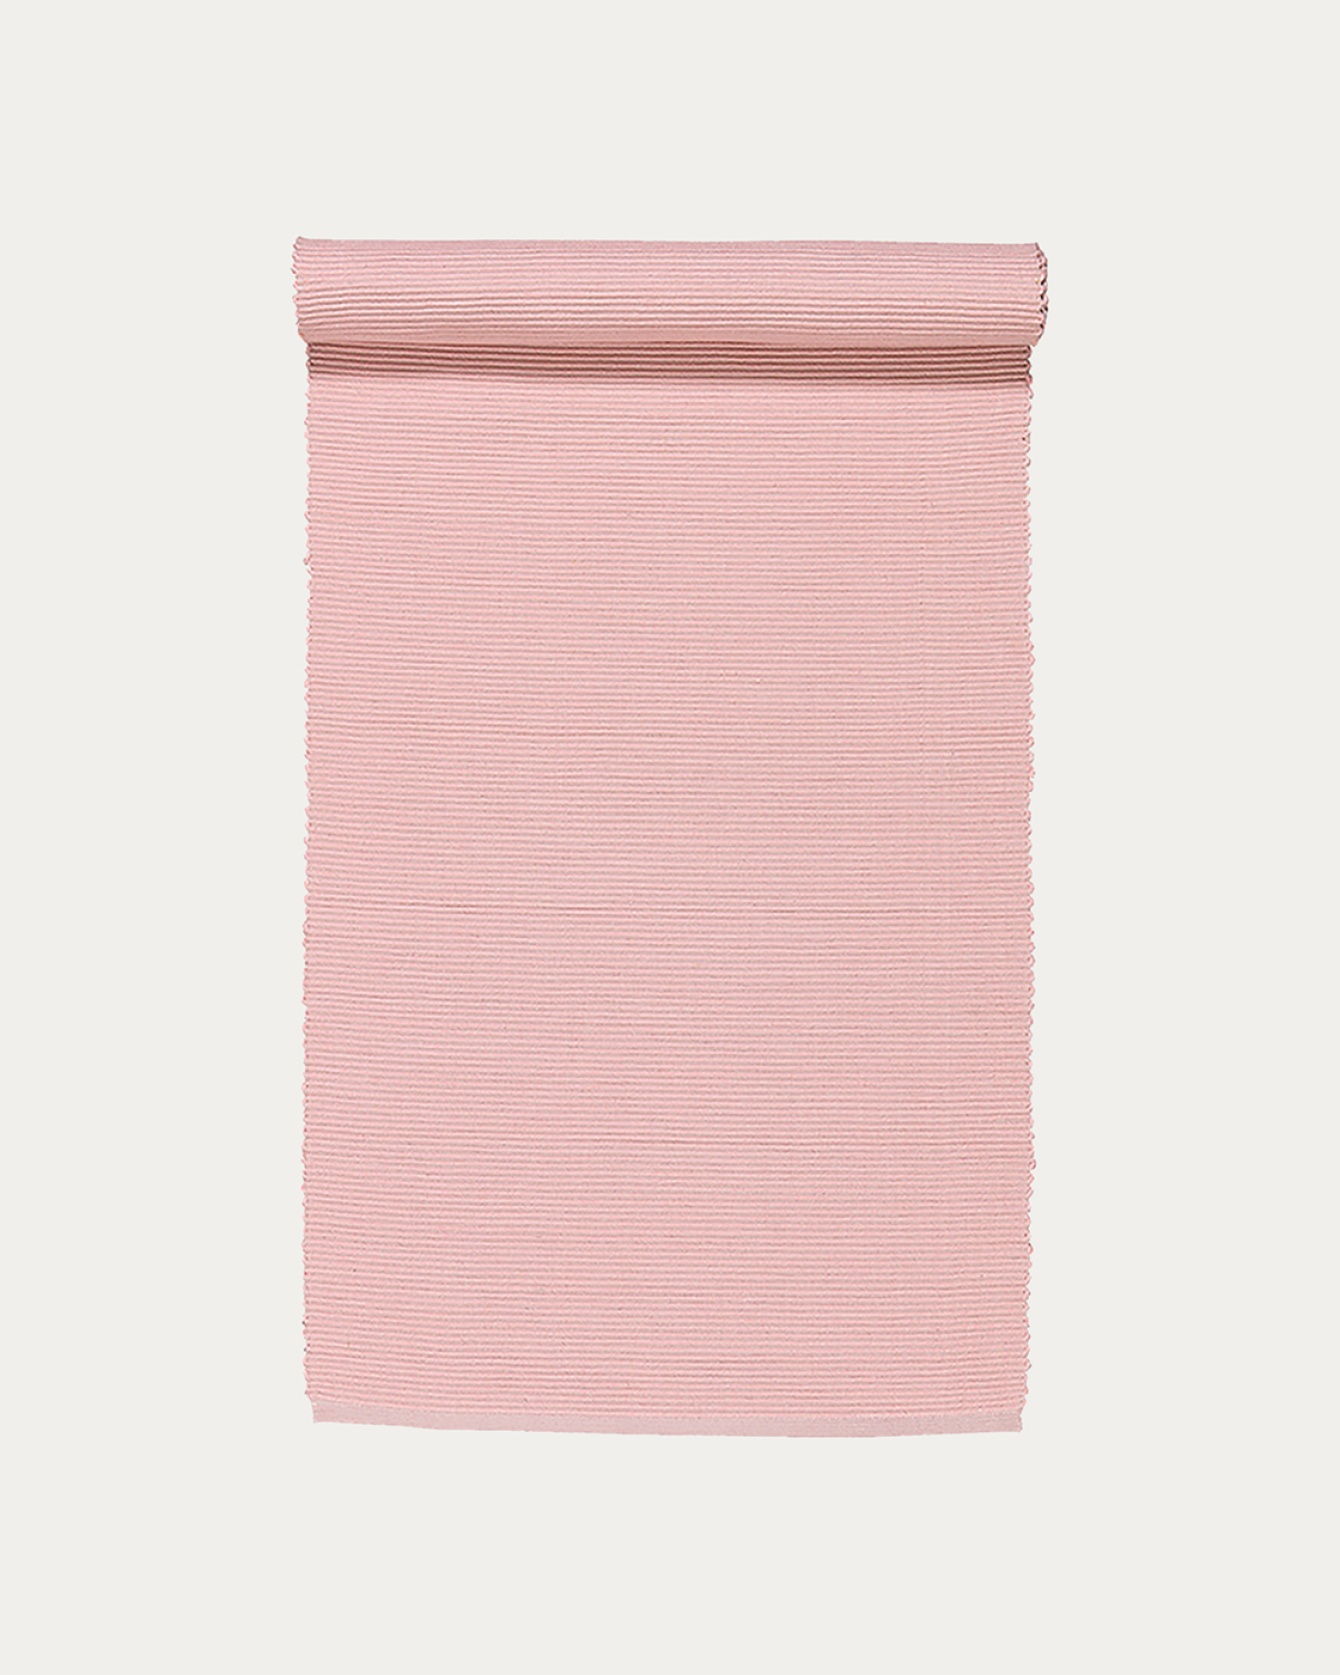 Image du produit chemin de table UNI rose poudré en coton doux de qualité côtelée de LINUM DESIGN. Taille 45 x 150 cm.